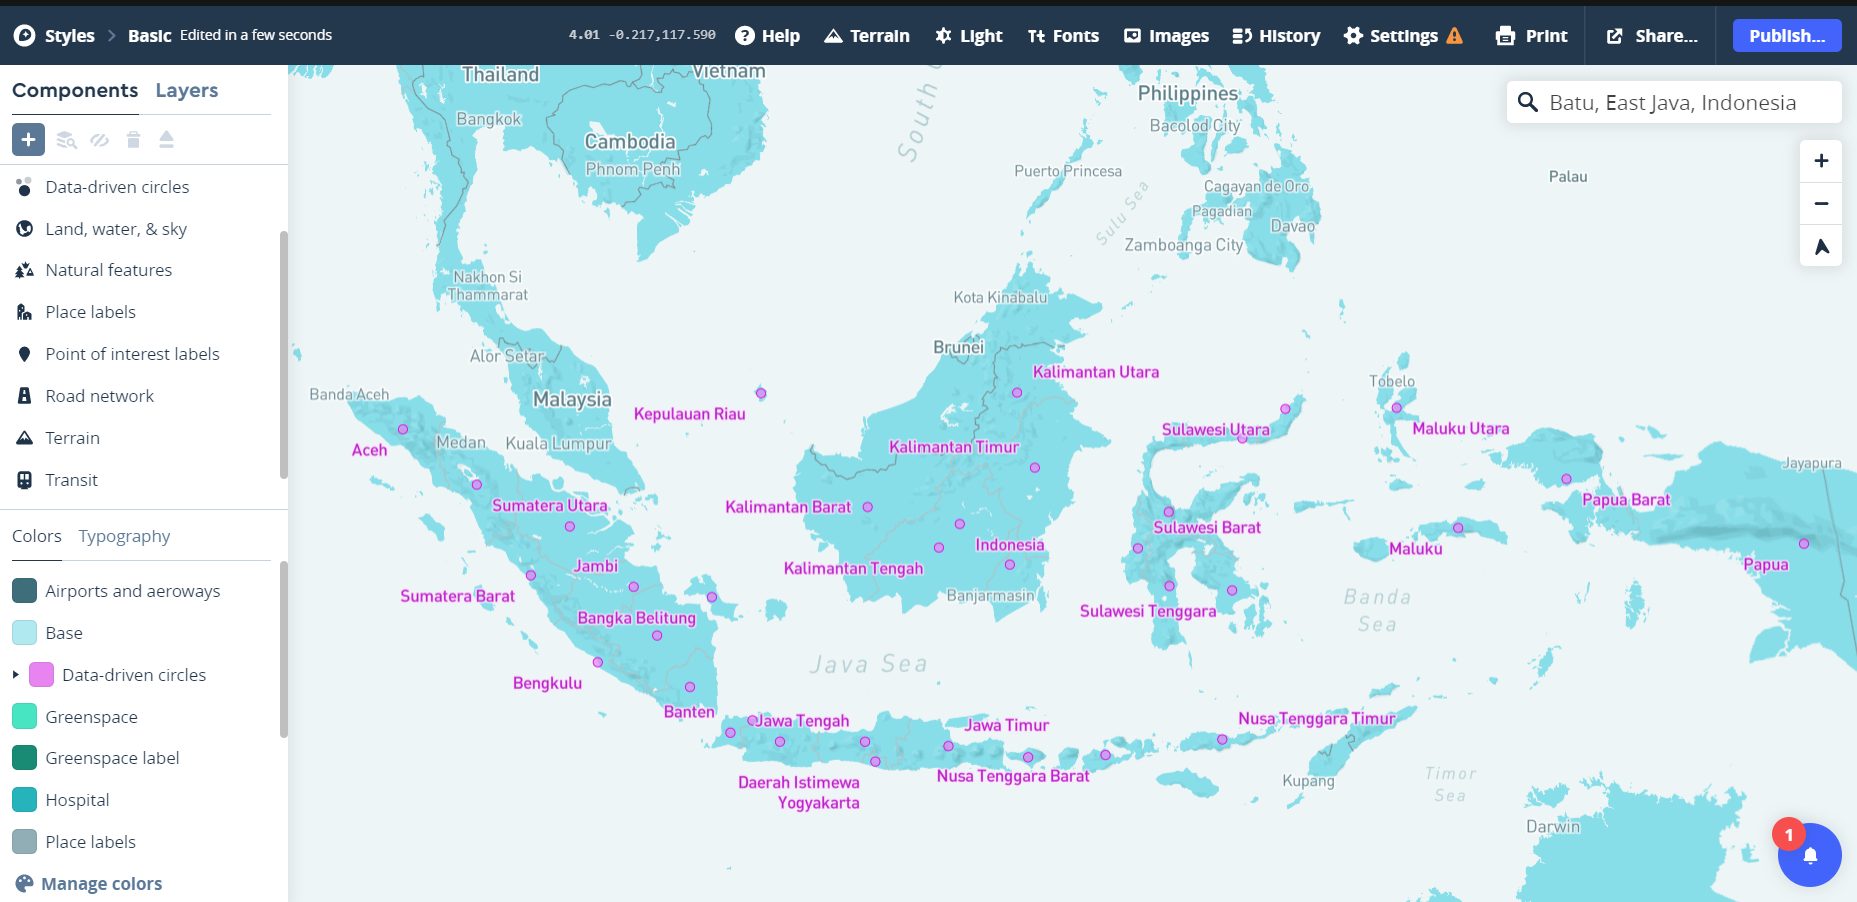 peta indonesia dengan provinsi